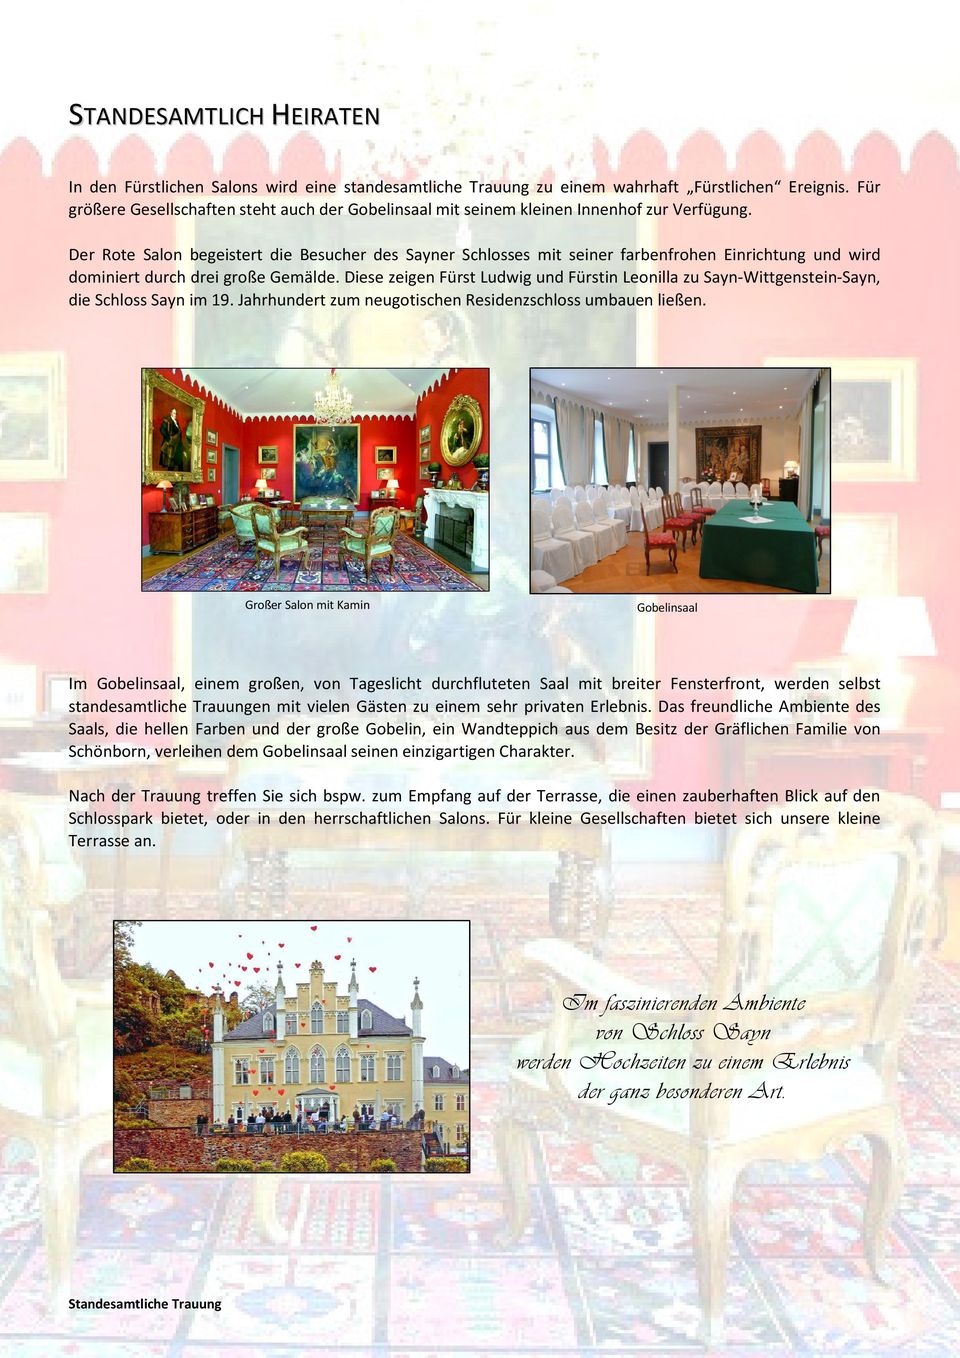 Der Rote Salon begeistert die Besucher des Sayner Schlosses mit seiner farbenfrohen Einrichtung und wird dominiert durch drei große Gemälde.